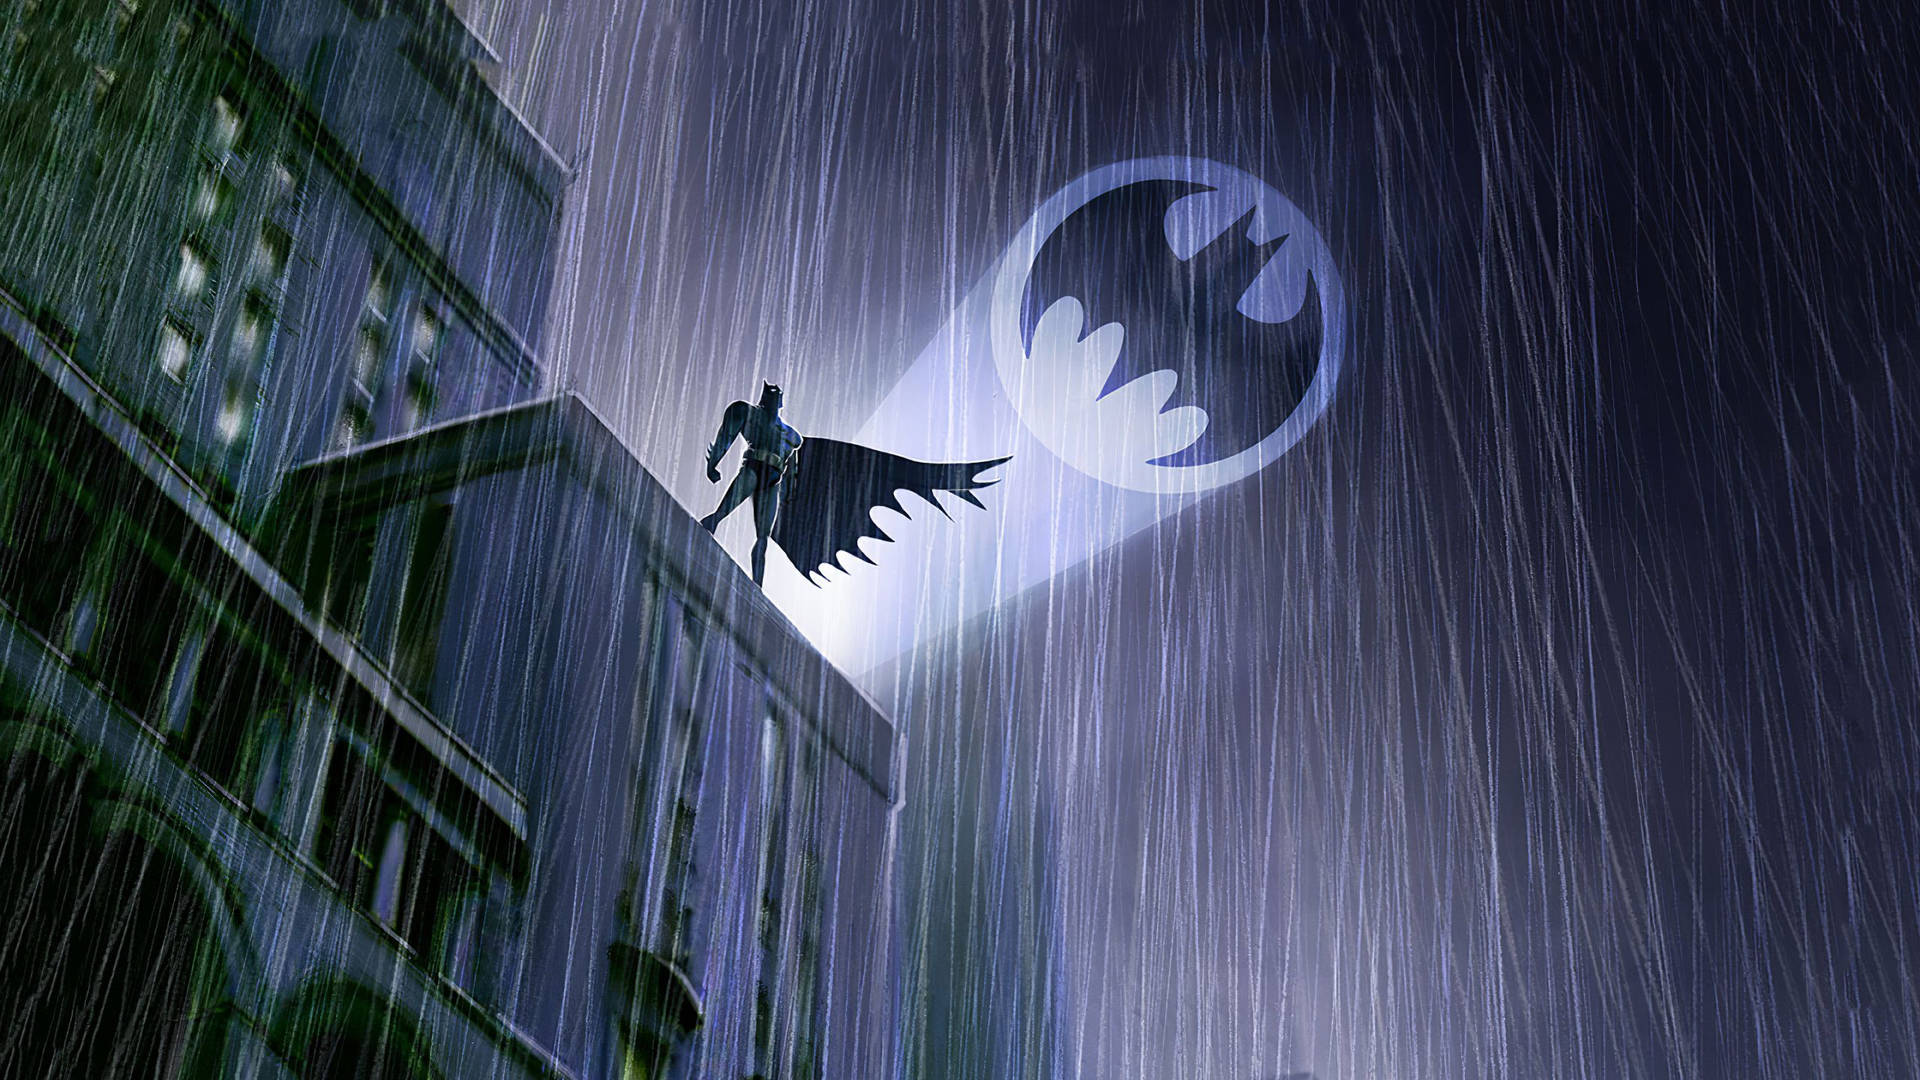 Batman Gifs on Twitter Batman Arkham Knight httpstcoeAR4KP8SBd   Twitter